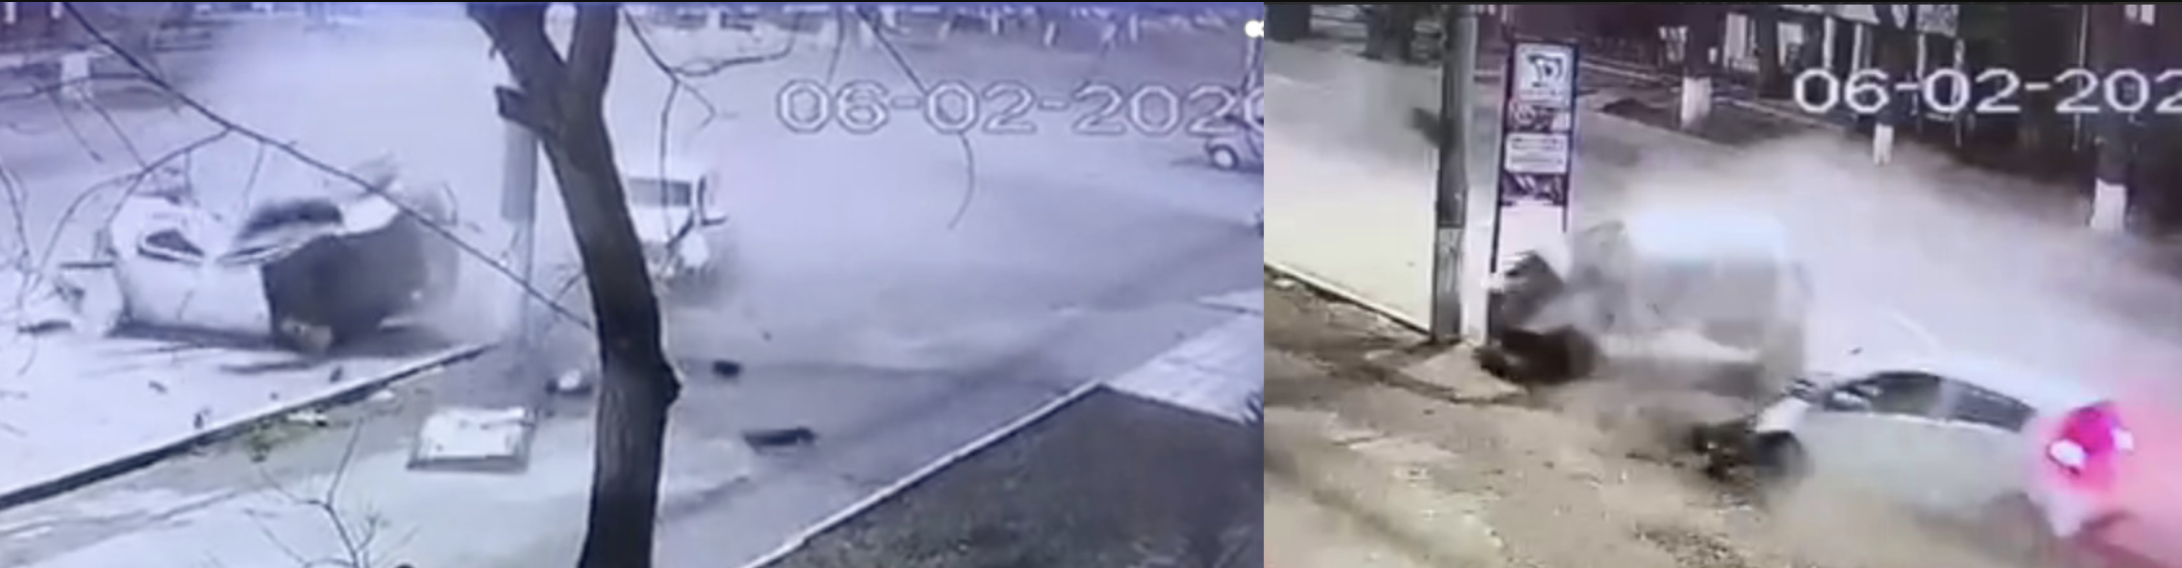 Жуткое смертельное ДТП в Ташкенте попало на камеру видеонаблюдения